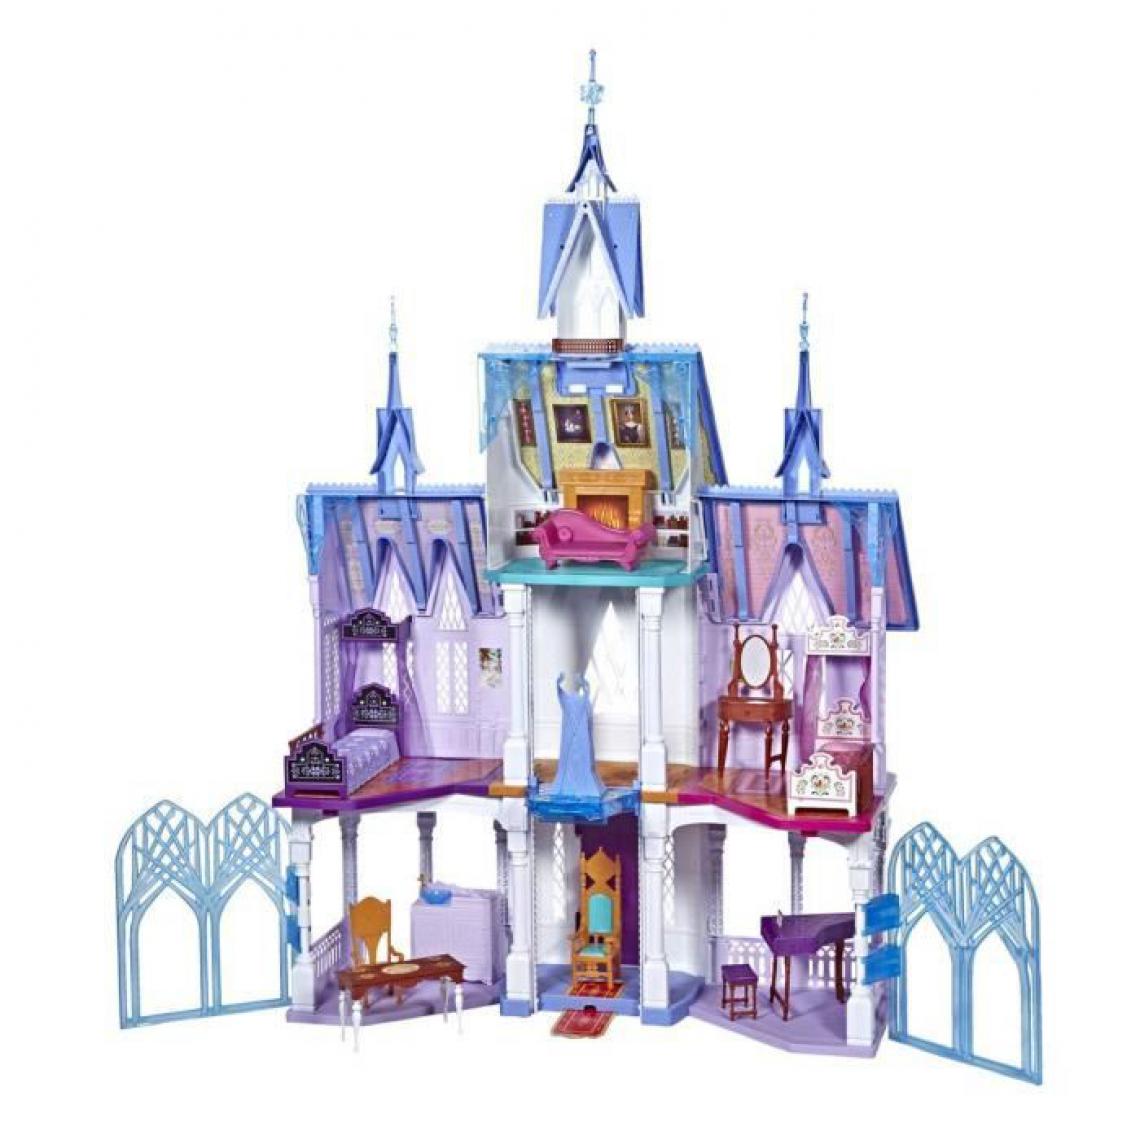 Icaverne - POUPEE Disney La Reine des Neiges 2 - L'Extraordinaire Château d'Arendelle des poupees Elsa et Anna - 1m50 de haut - 4 étages - Poupées